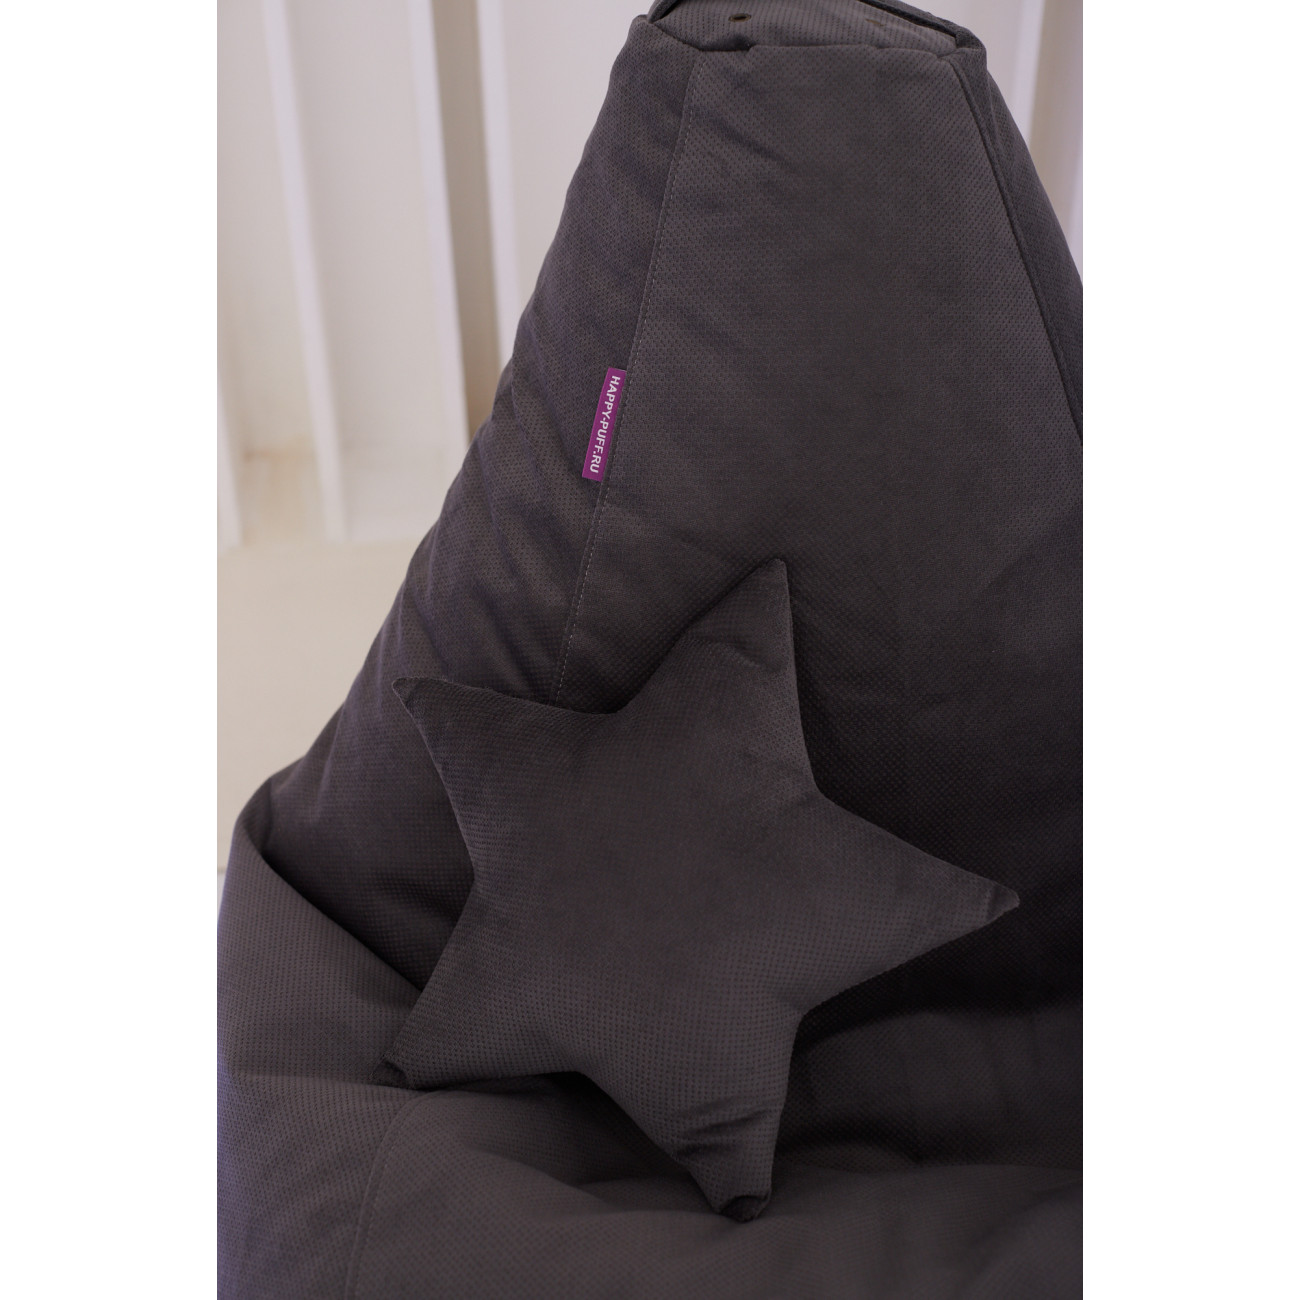 Декоративная подушка звездочка «Велюр светло-серый»